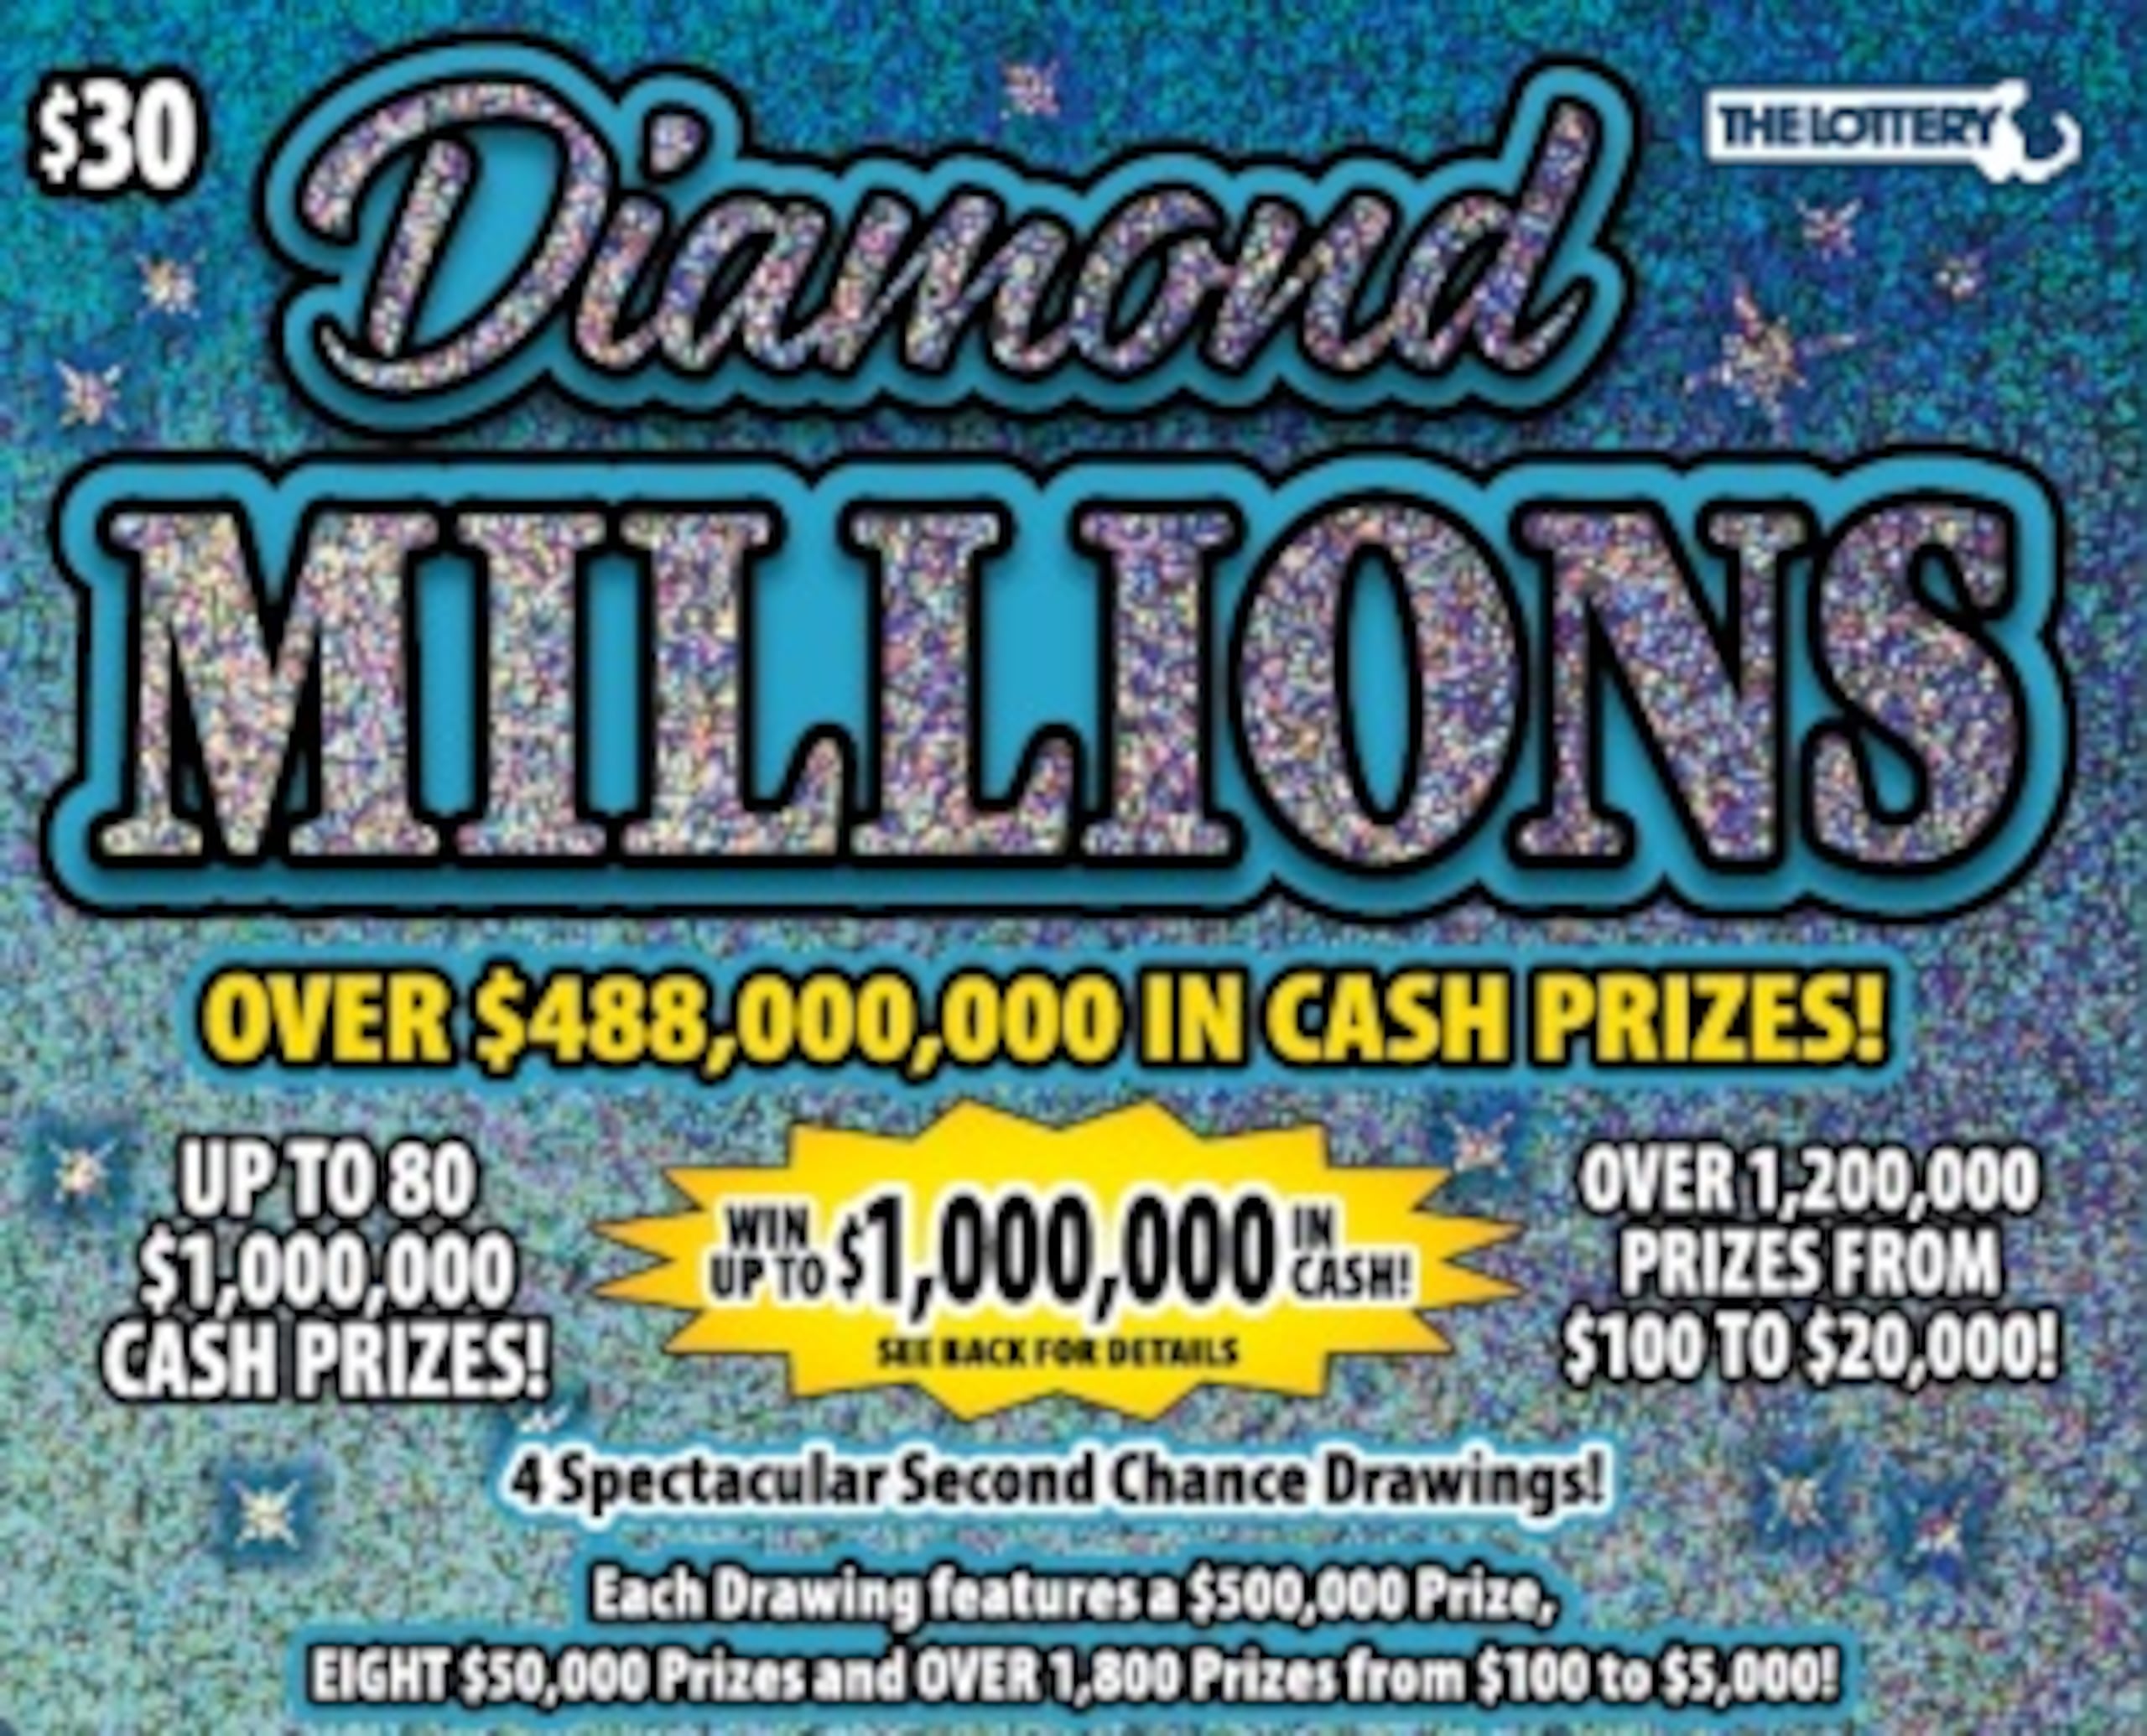 Lea Rose Fiega compró el boleto Diamond Millions de $30 en la tienda Lucky Stop en Southwick cerca de donde trabaja.